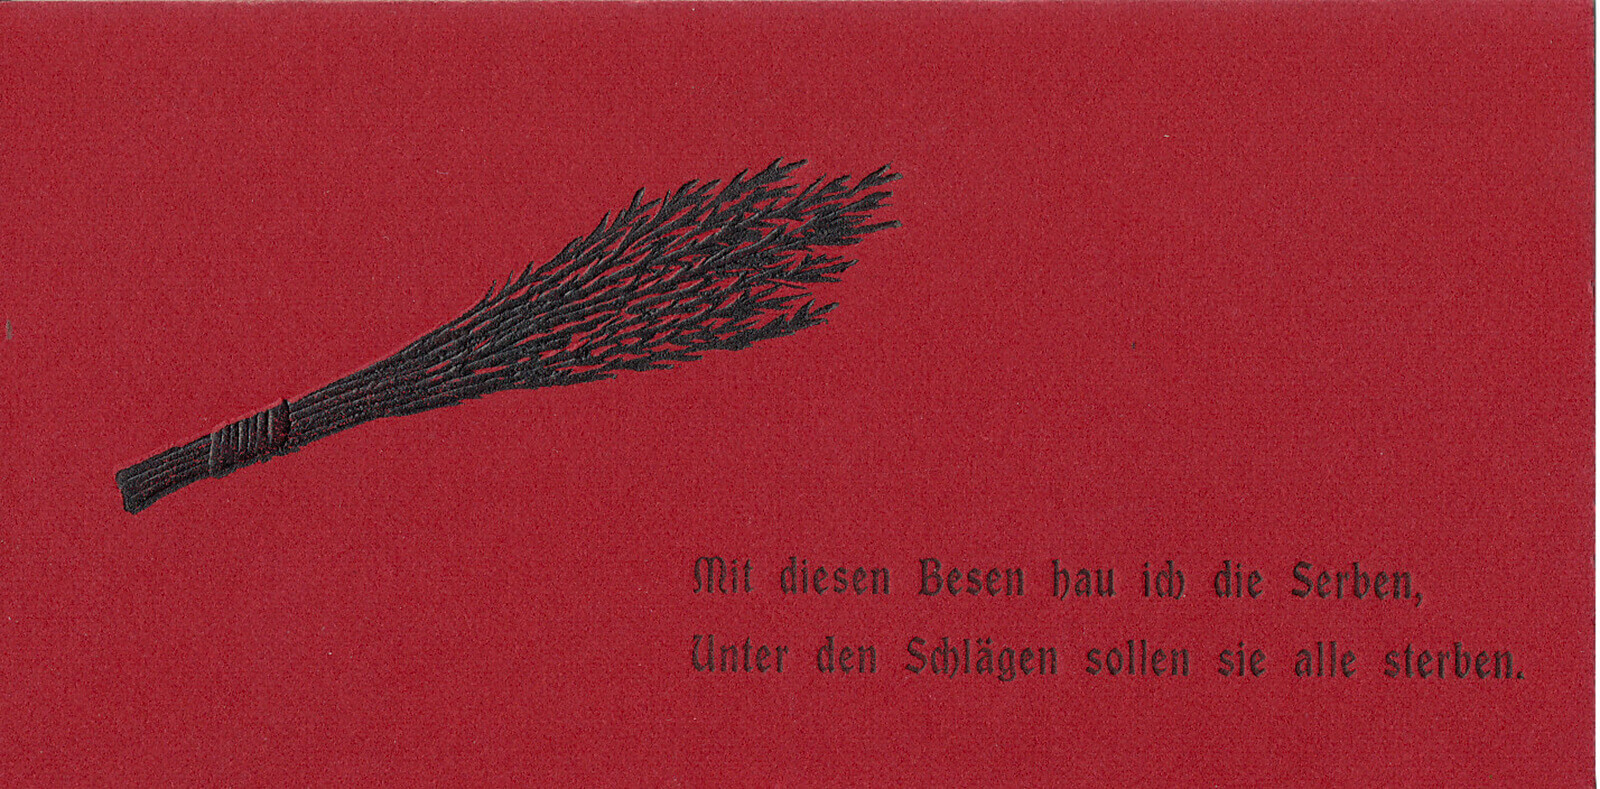 Krampus-Grußkarte mit Kriegspropaganda, 1914, Wien Museum 